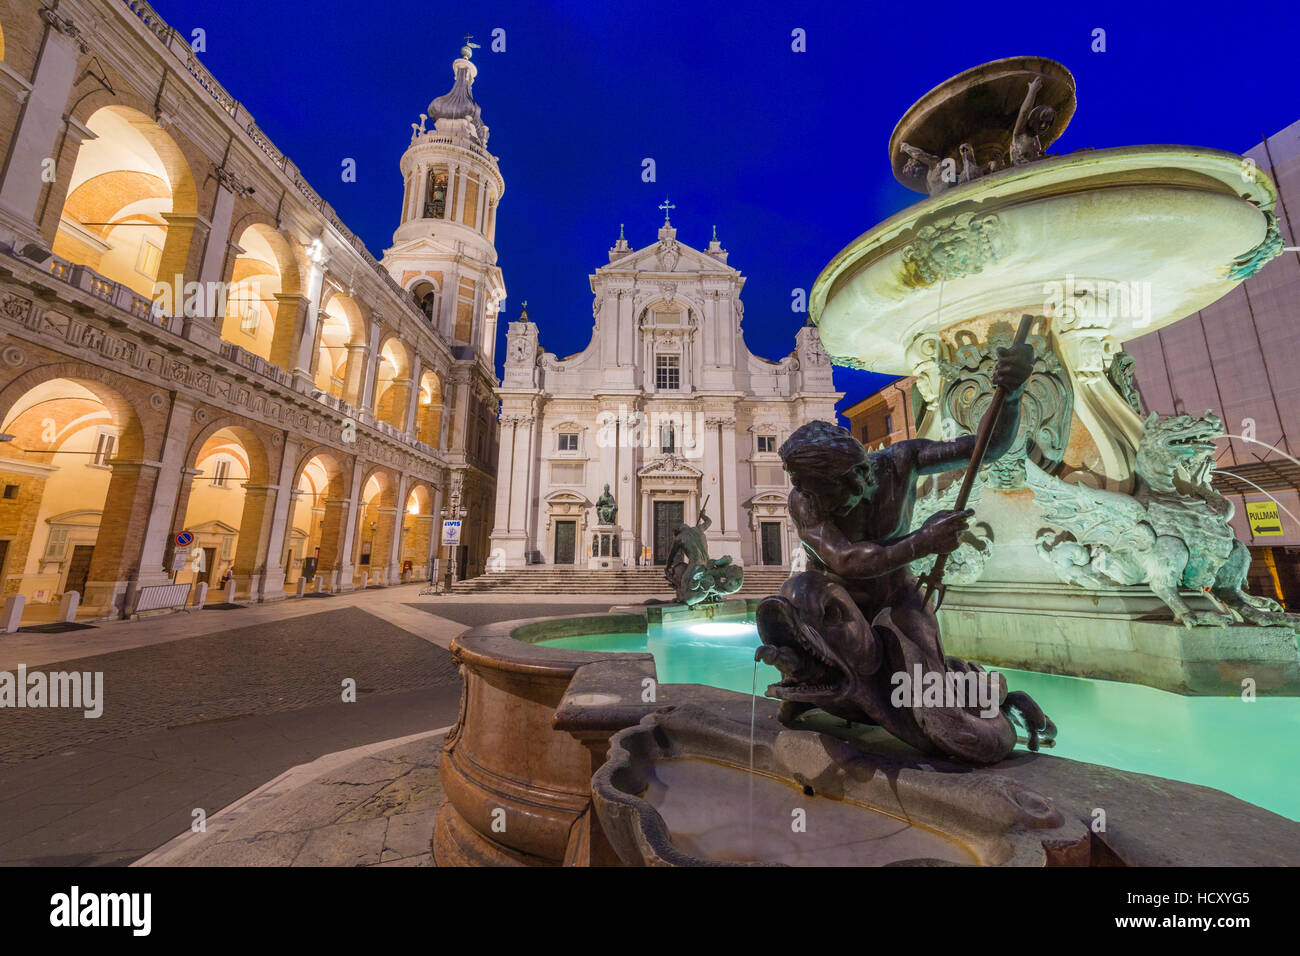 Vista notturna della Basilica della Santa Casa e una fontana decorata con statue, Loreto, in provincia di Ancona, Marche, Italia Foto Stock